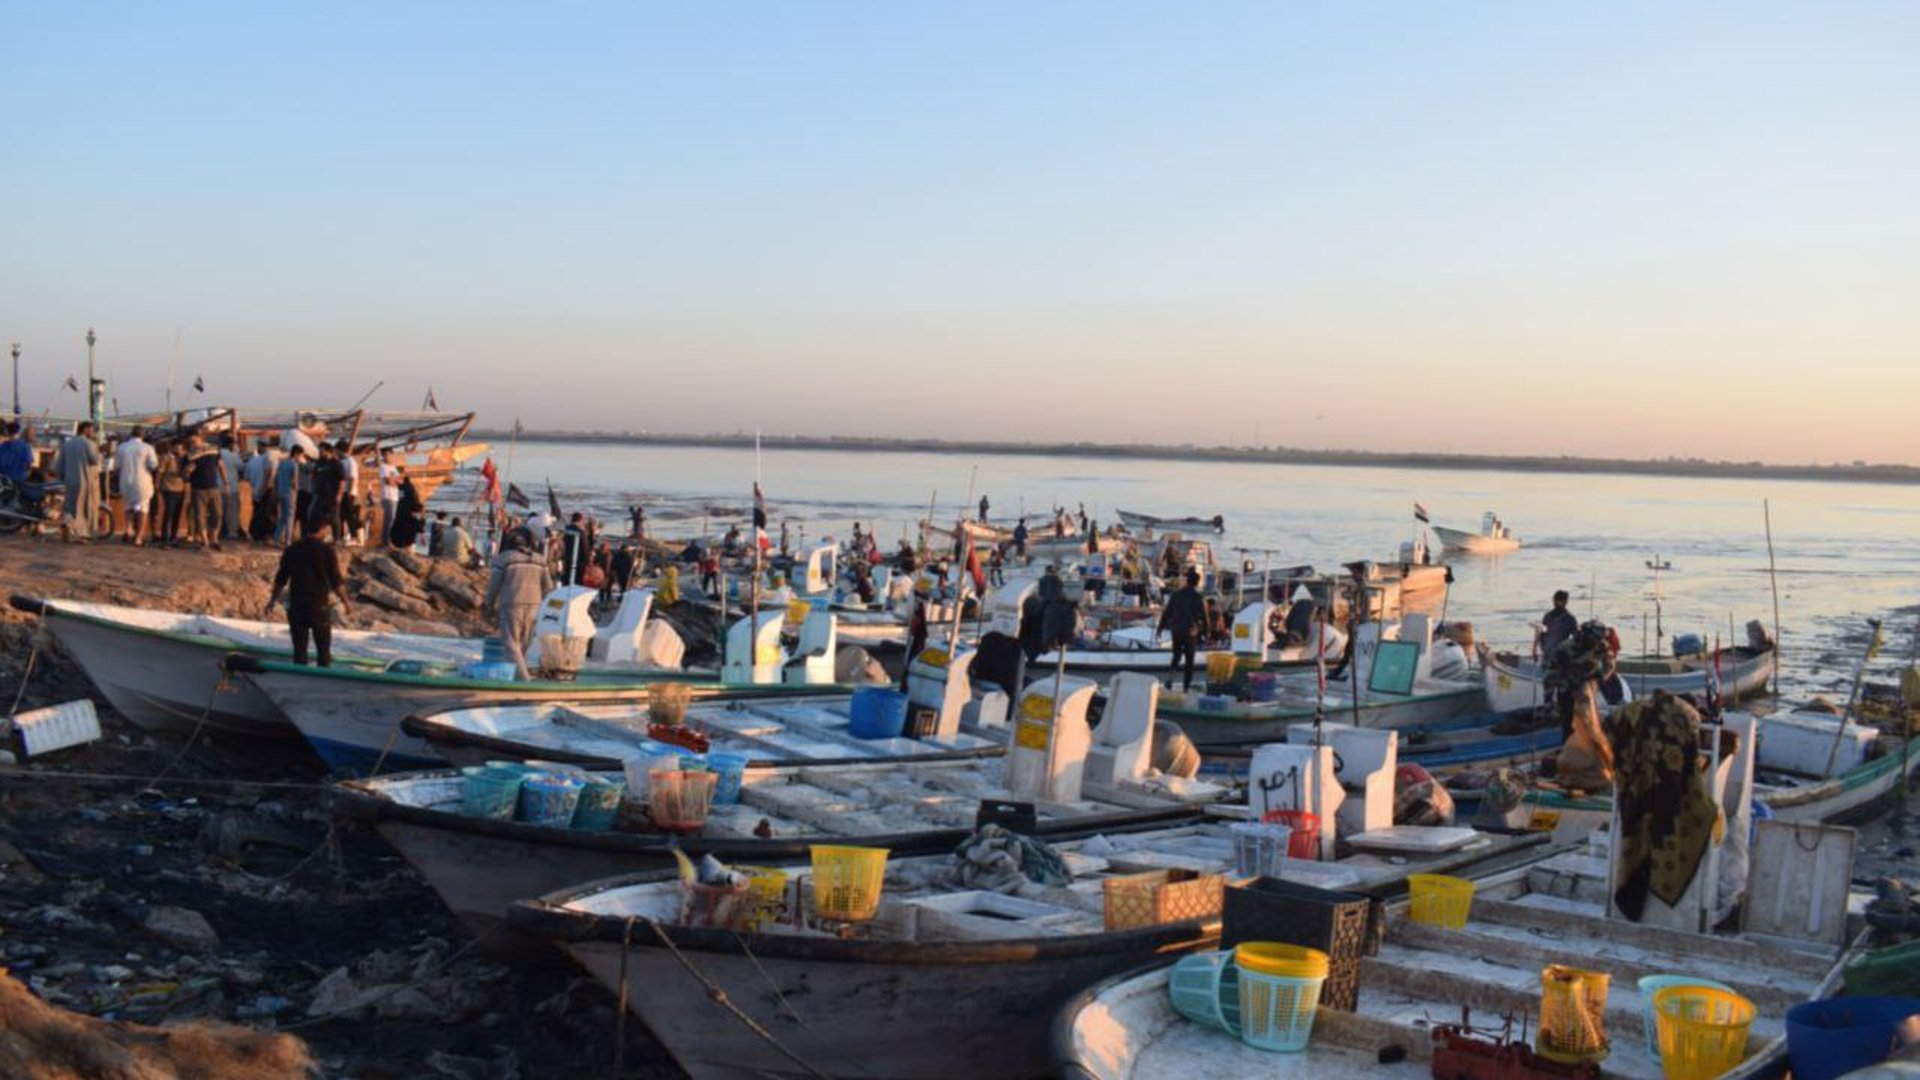 صور من صباح مرسى النقعة: قائمة بأصناف وأسعار السمك في مزاد الفاو الكبير